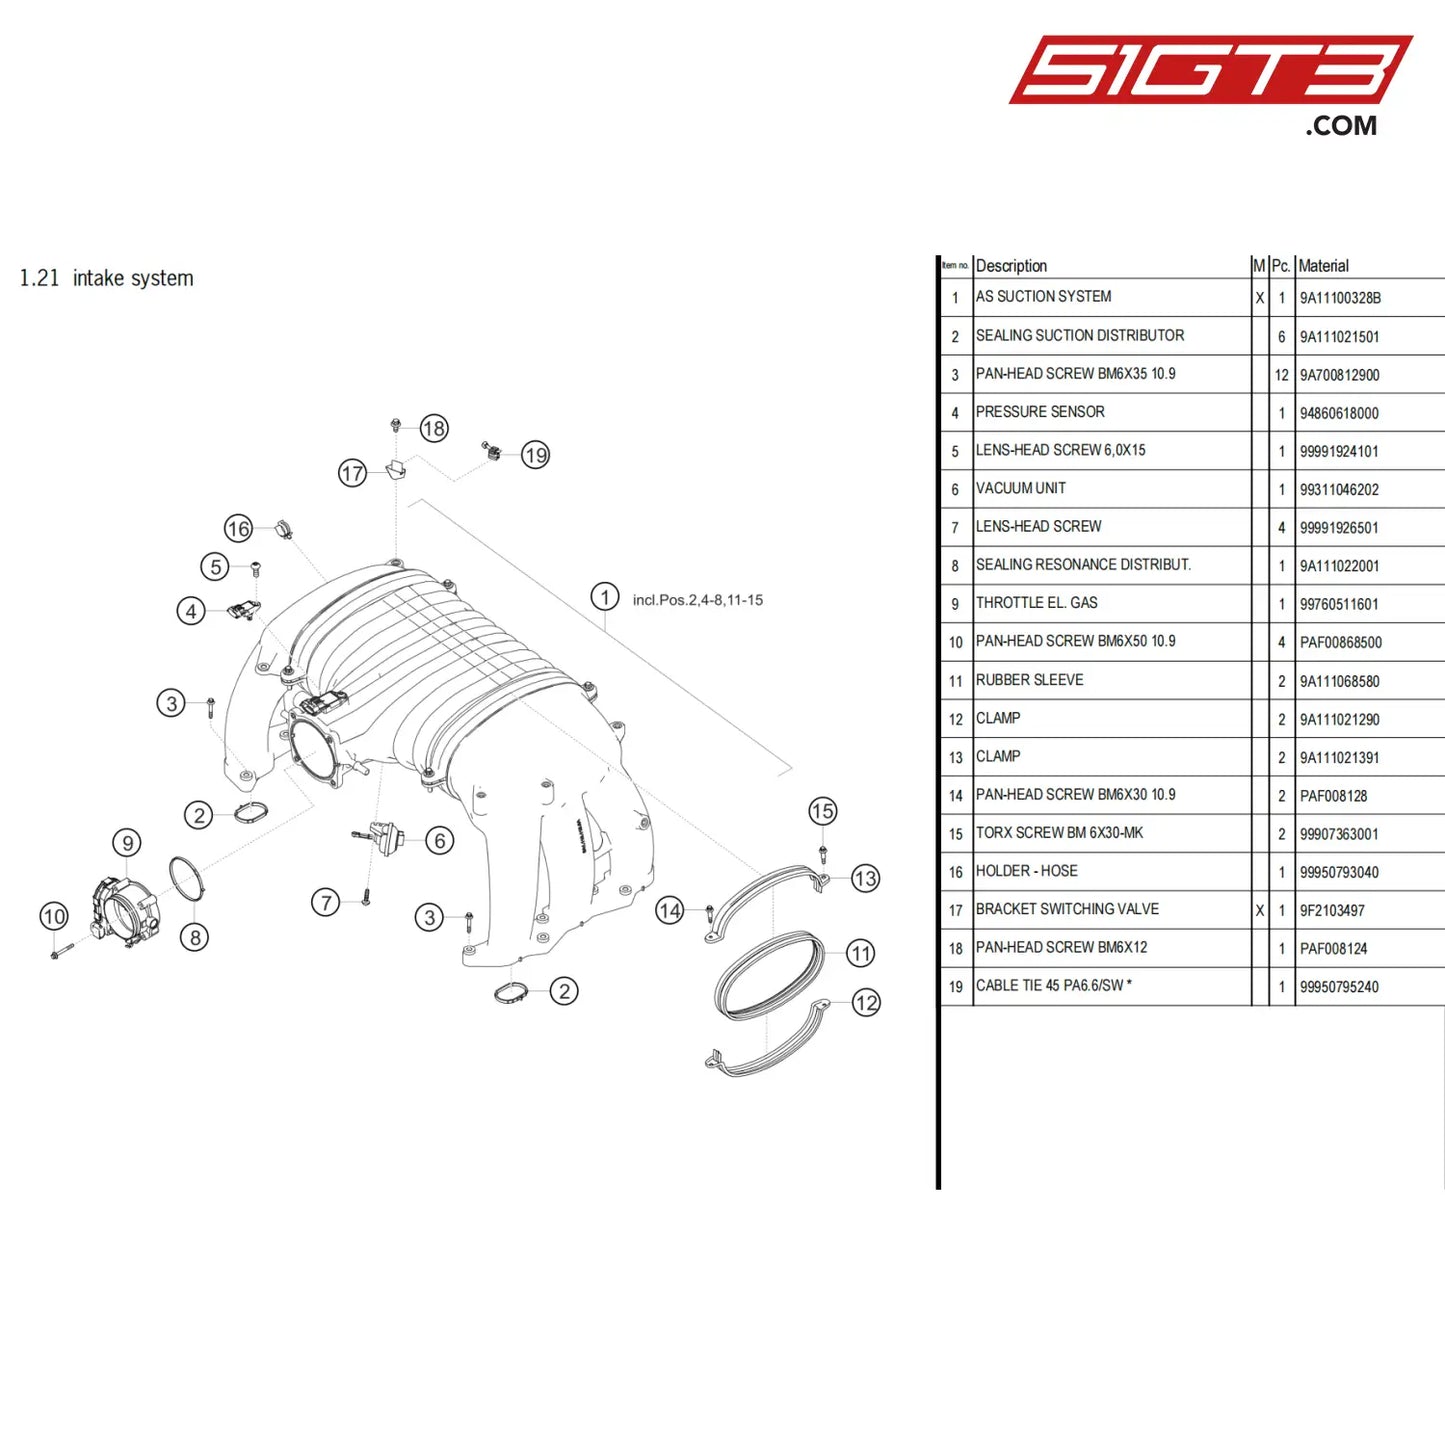 Rubber Sleeve - 9A111068580 [Porsche 718 Cayman Gt4 Clubsport] Intake System